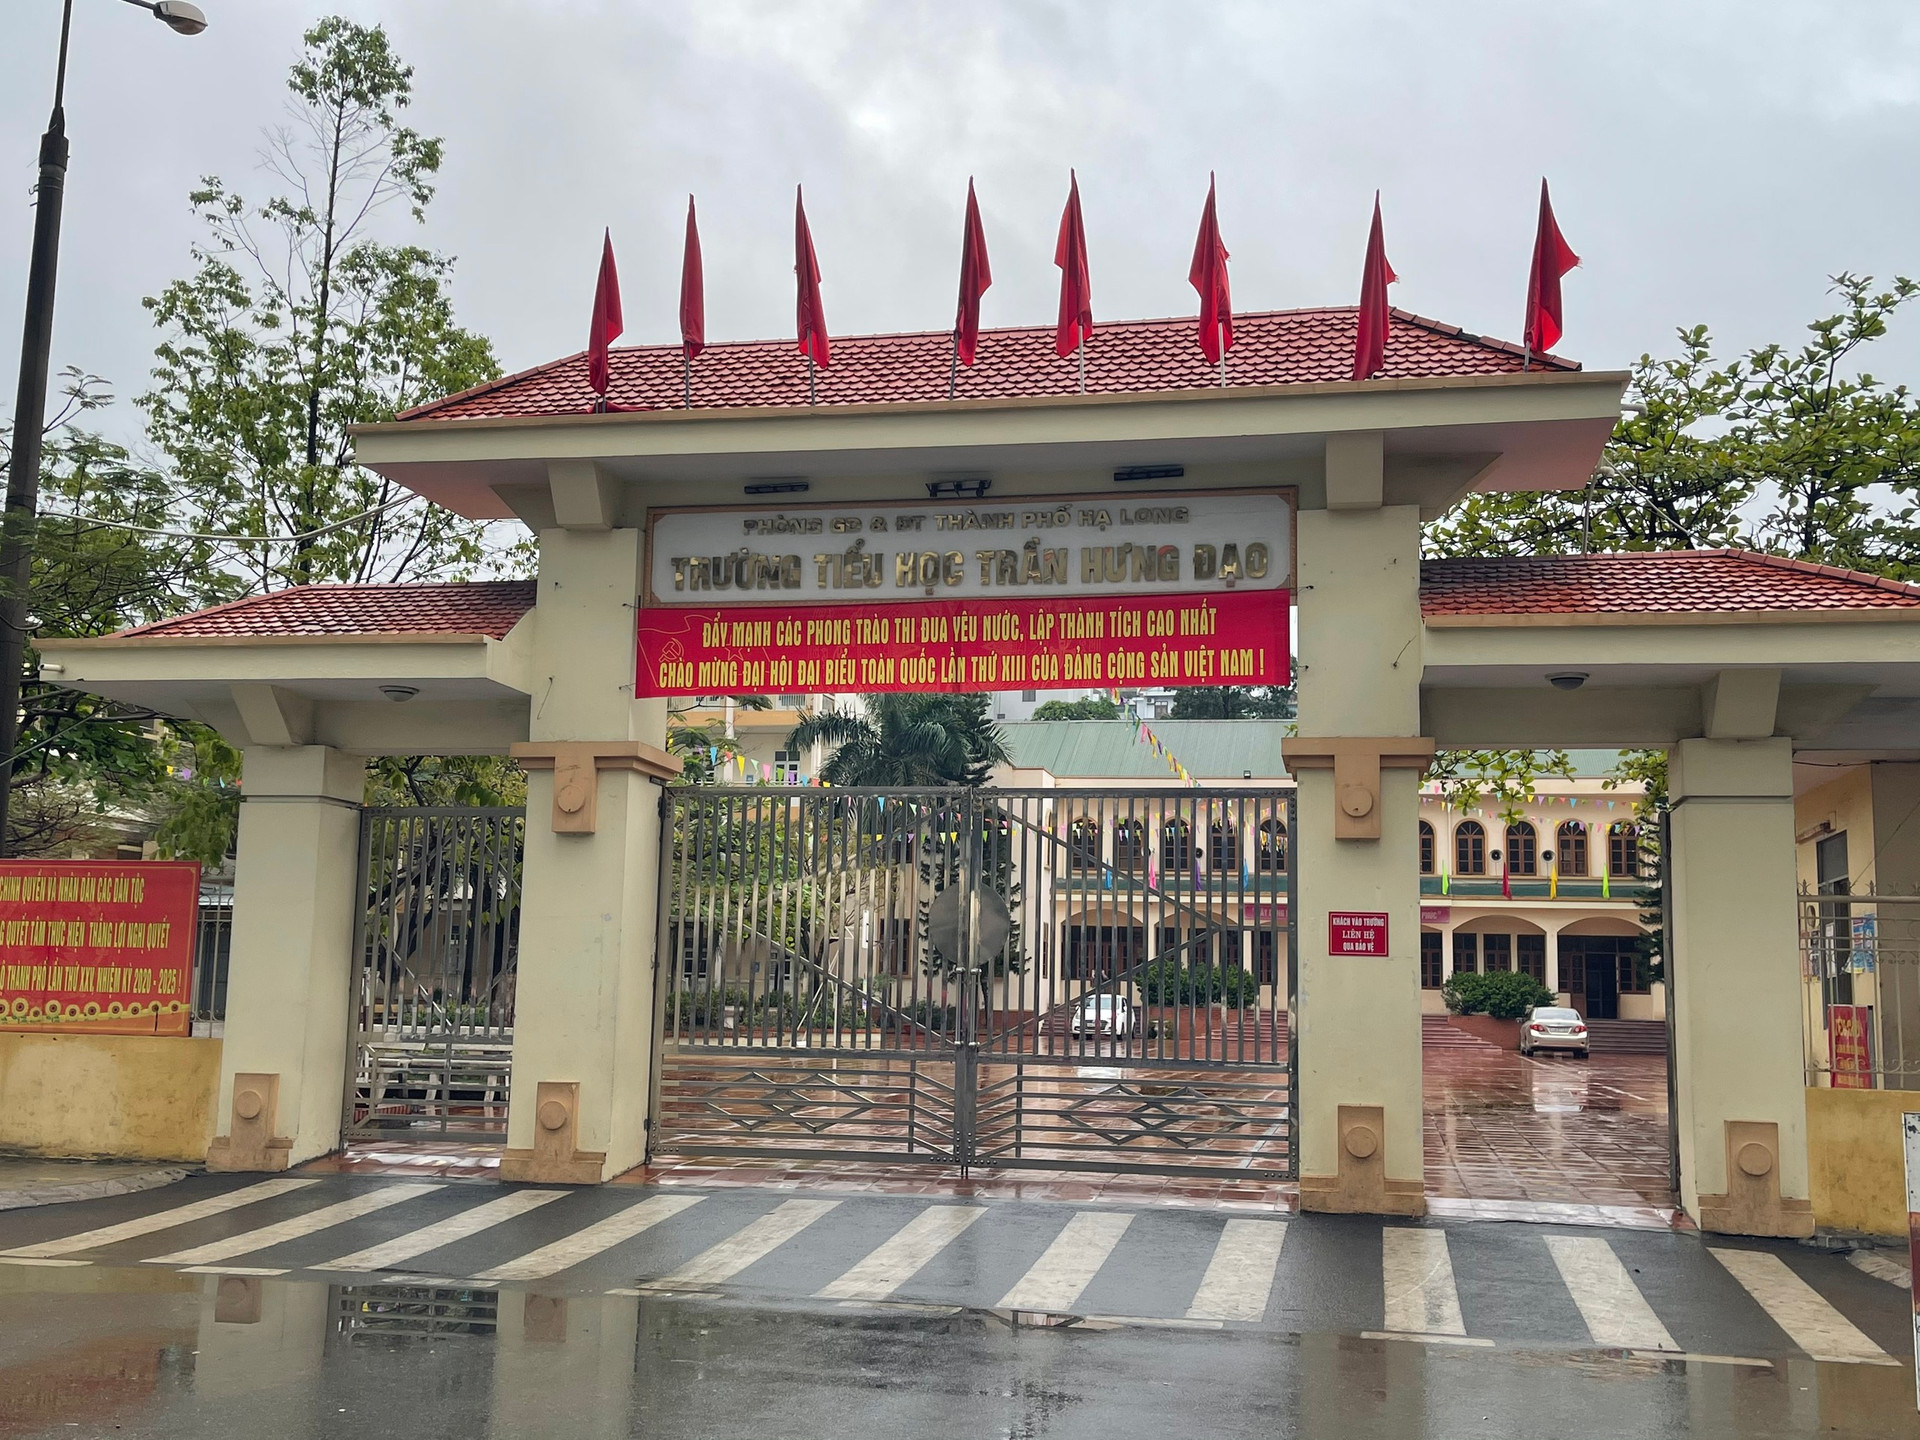 Trường Tiểu học Trần Hưng Đạo đã cho toàn bộ học sinh nghỉ học và thực hiện học trực tuyến tại nhà từ ngày 26/3.